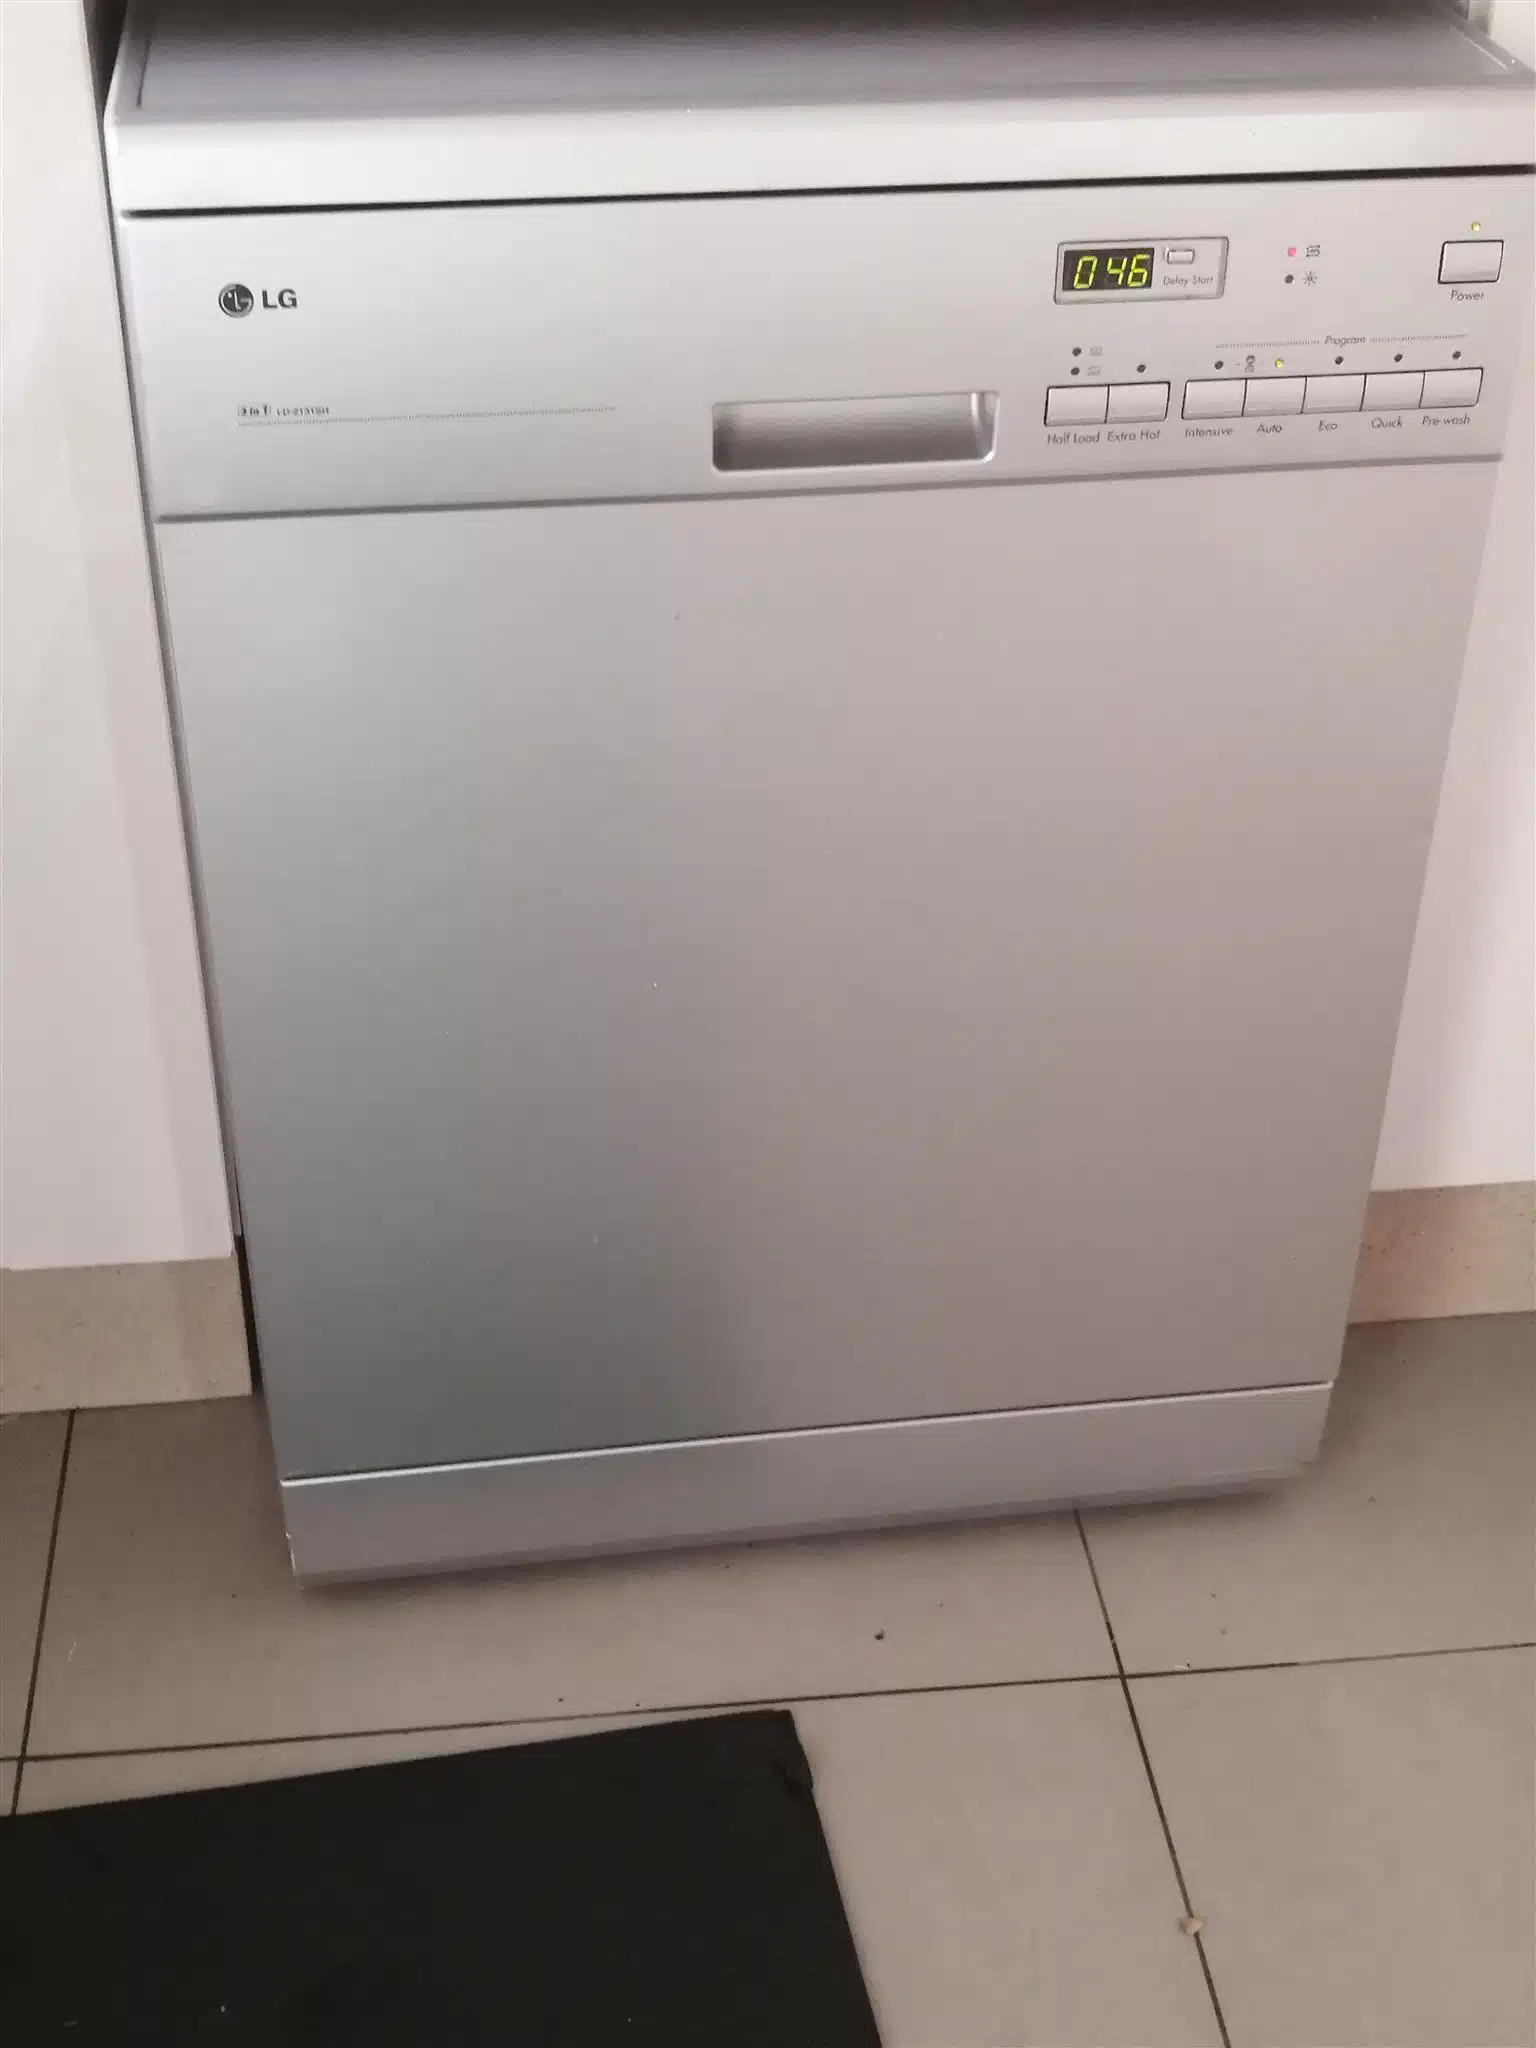 worst dishwashers brand LG to avoid